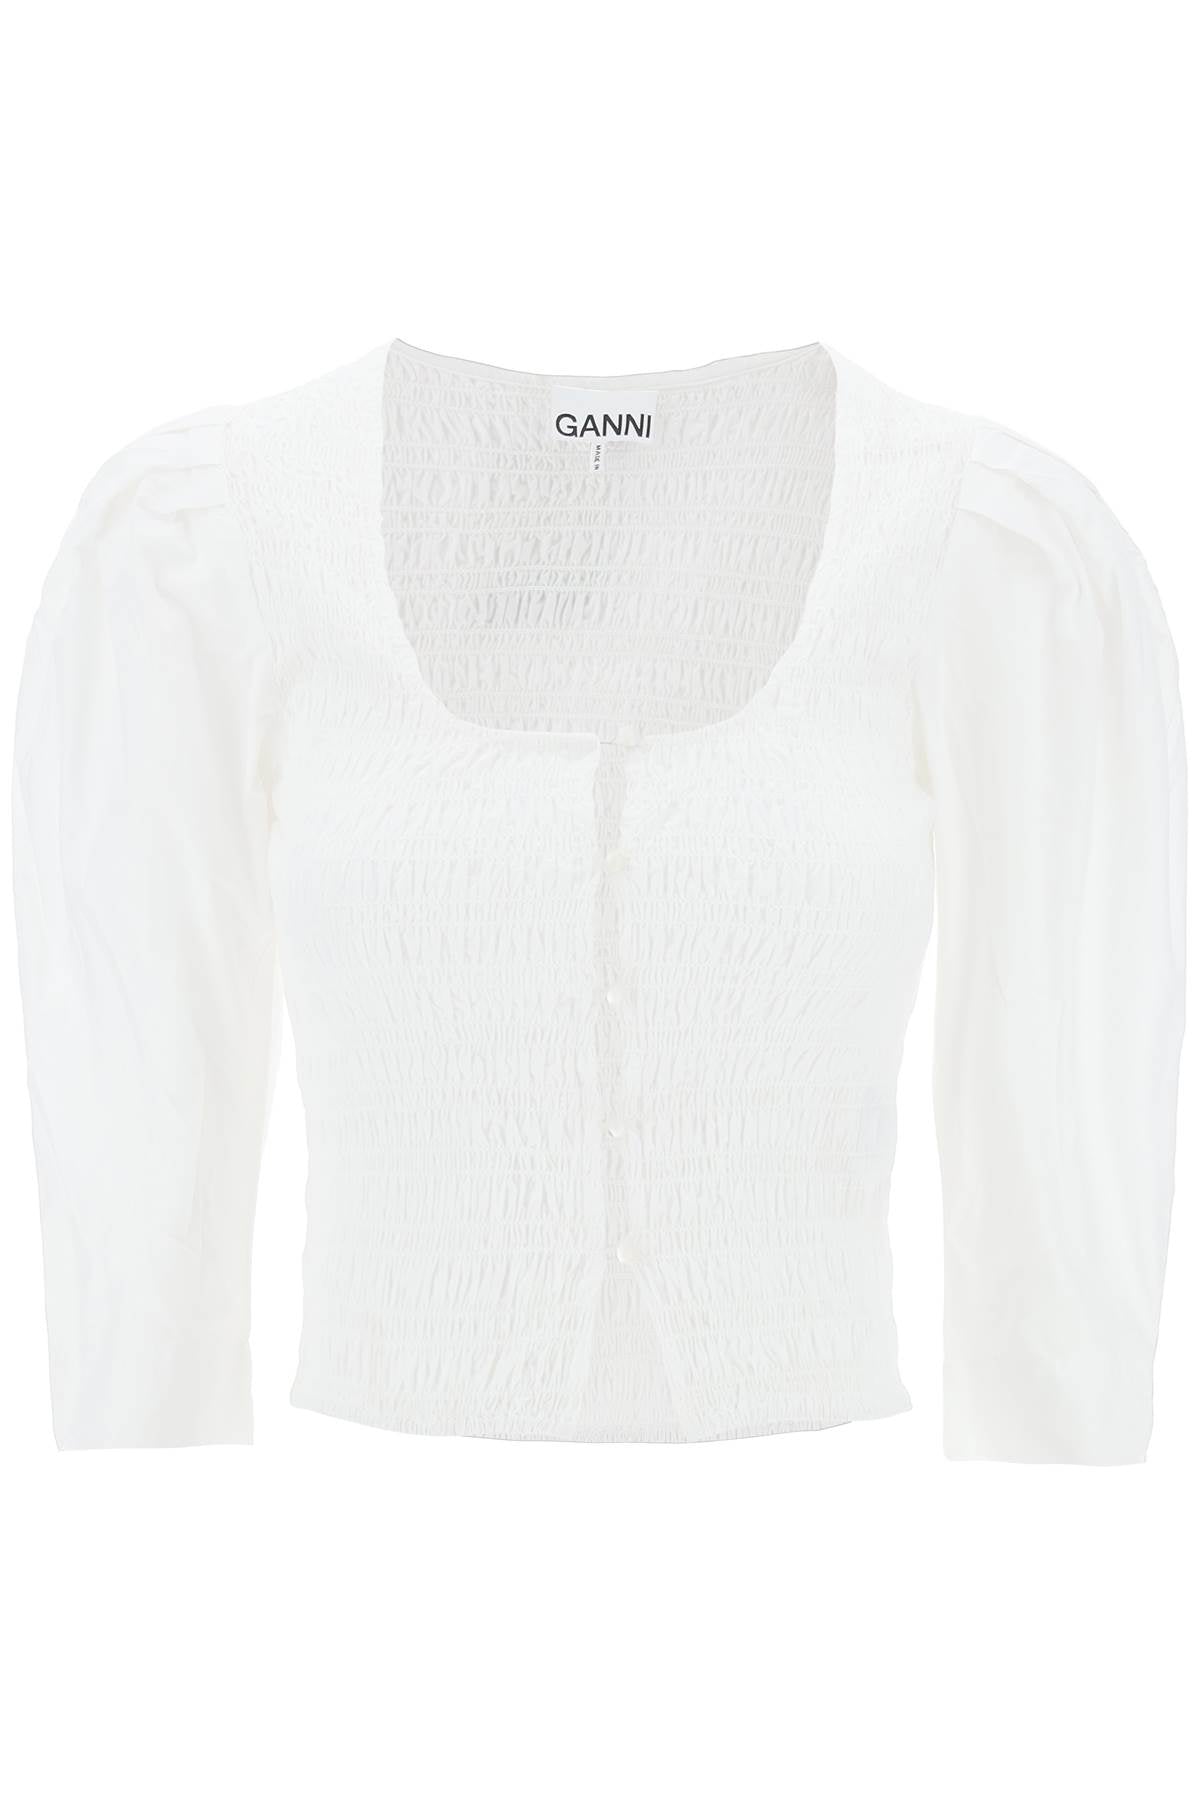 Ganni "poplin smock blouse-0